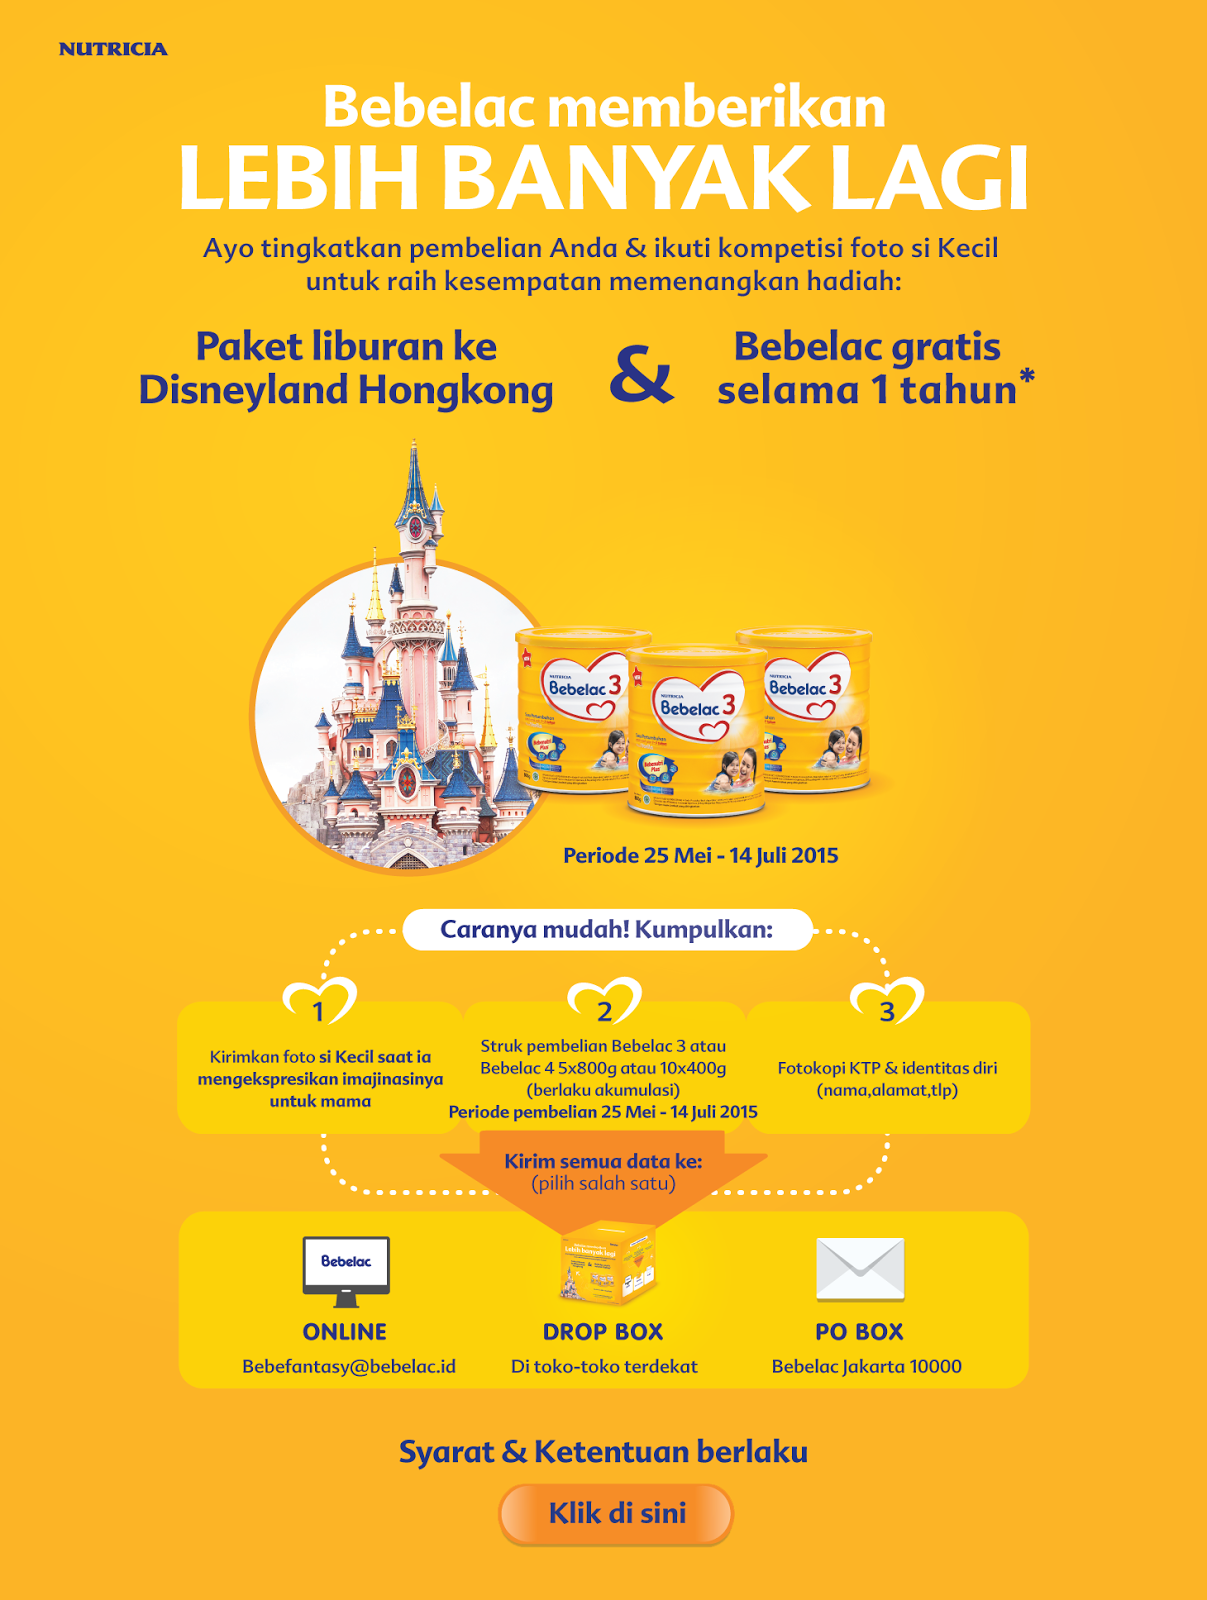 Promo BebeFantasy 2 Hadiah 20 Paket Liburan ke Disneyland Hongkong